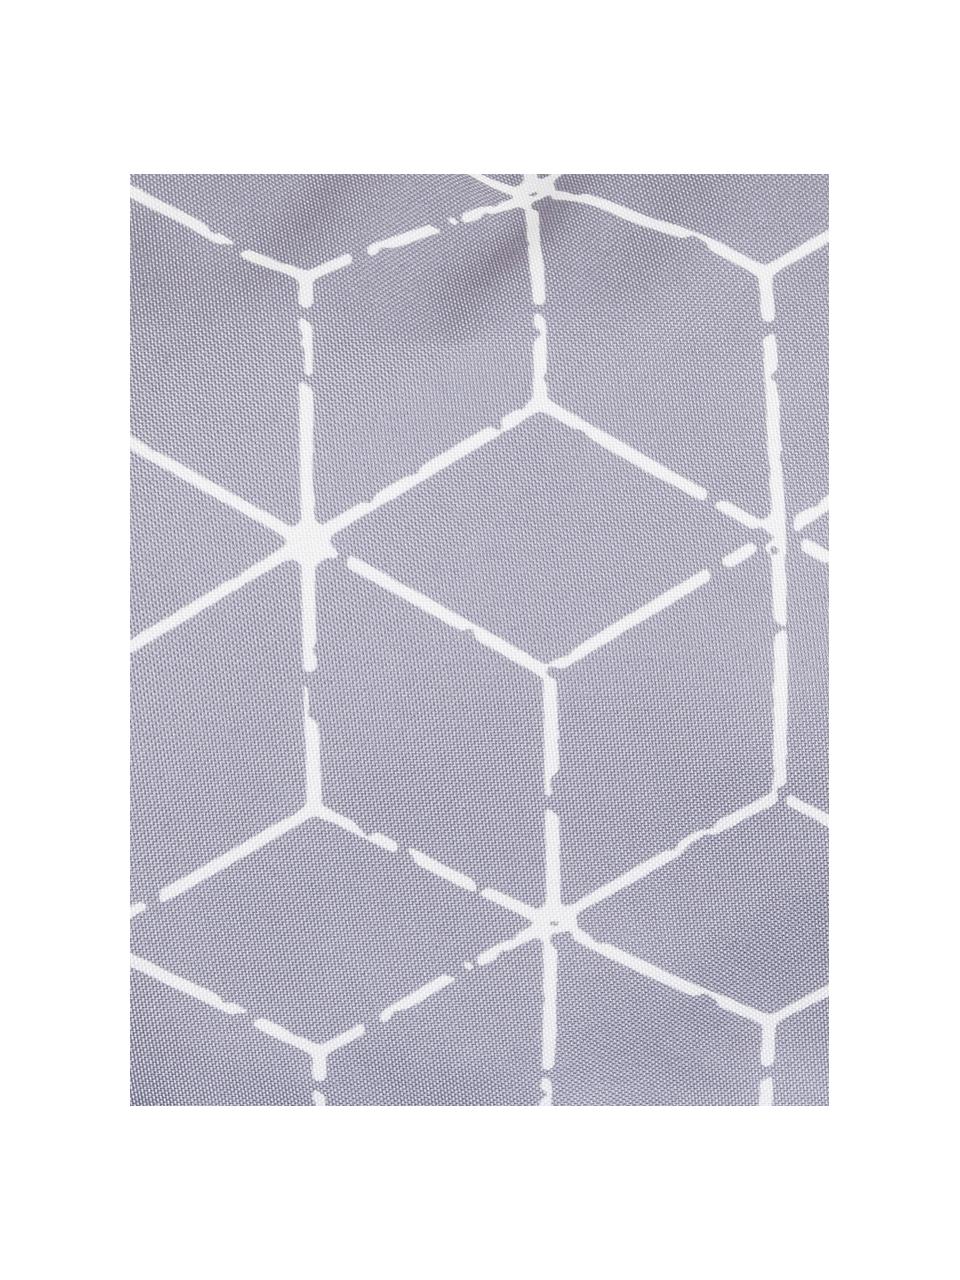 Poduszka zewnętrzna z wypełnieniem Cube, 100% poliester, Szary, biały, S 30 x D 50 cm